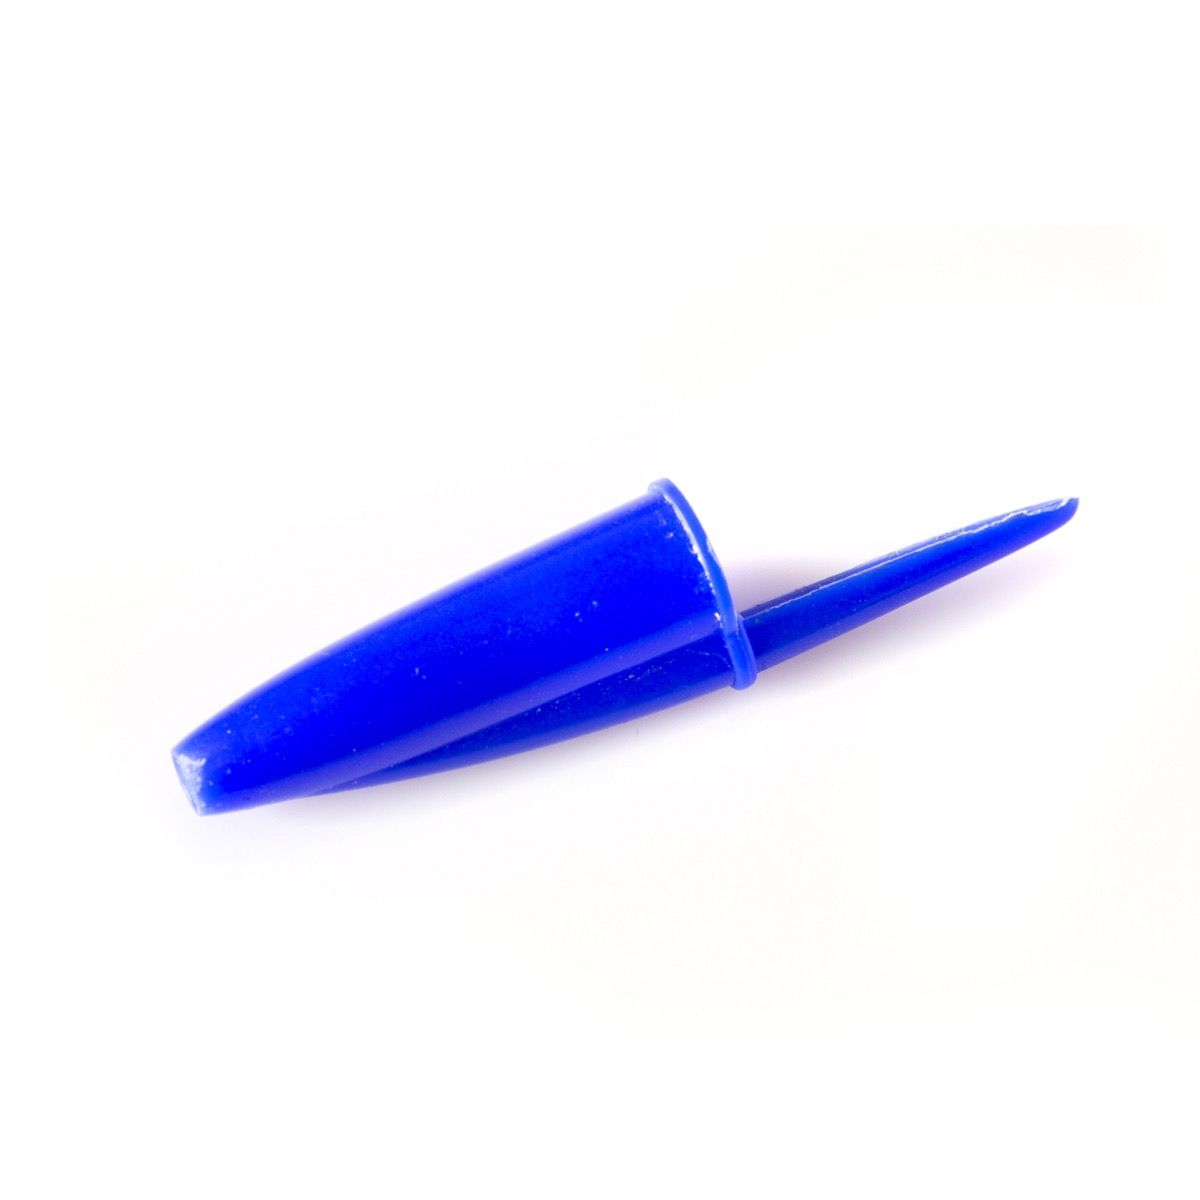 sinine pliiatsi kork